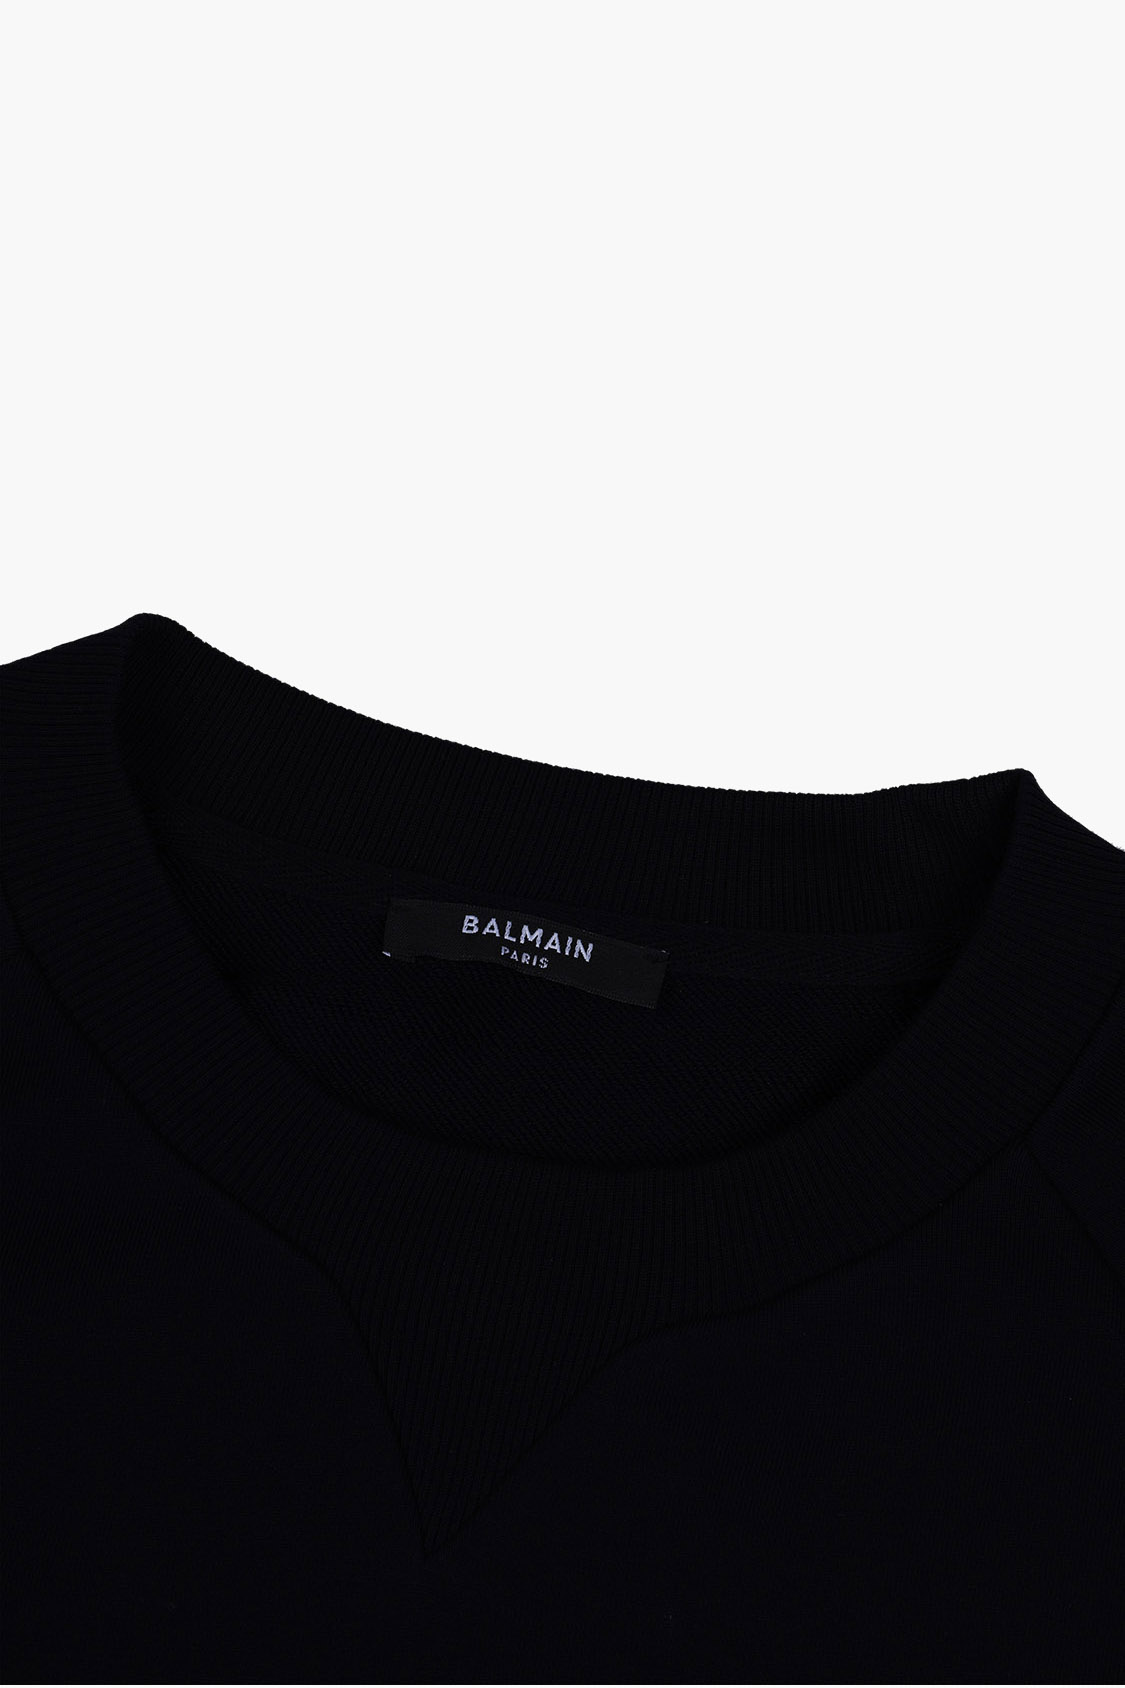 BALMAIN Women Balmain Paris Logo Sweatshirt in Black/White 3